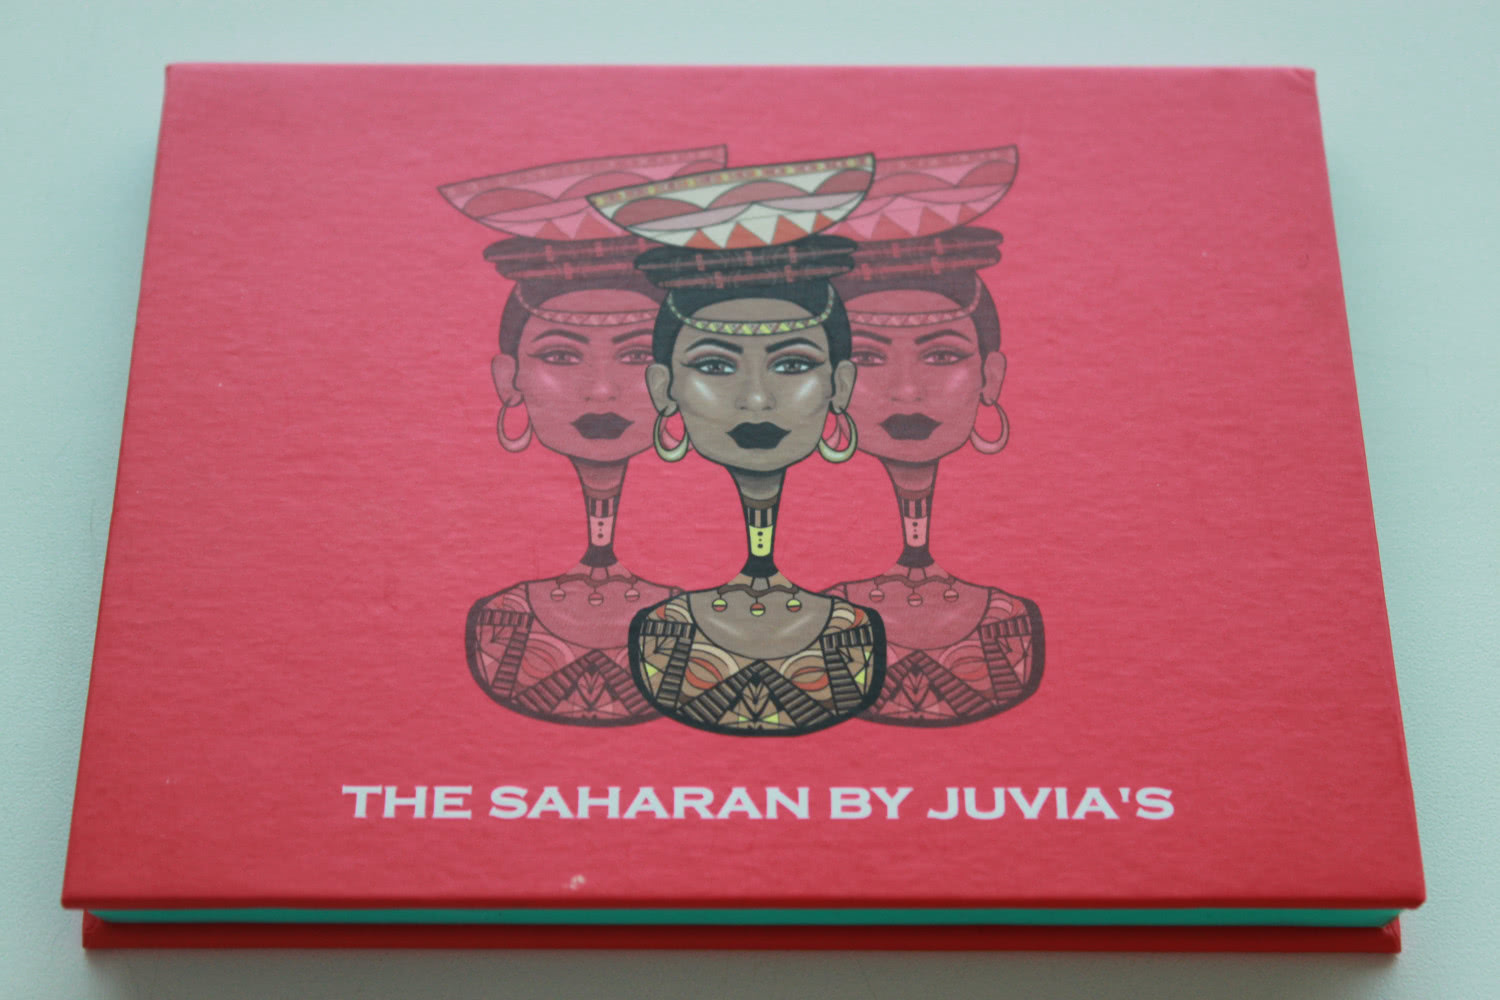 THE SAHARAN BY JUVIAS